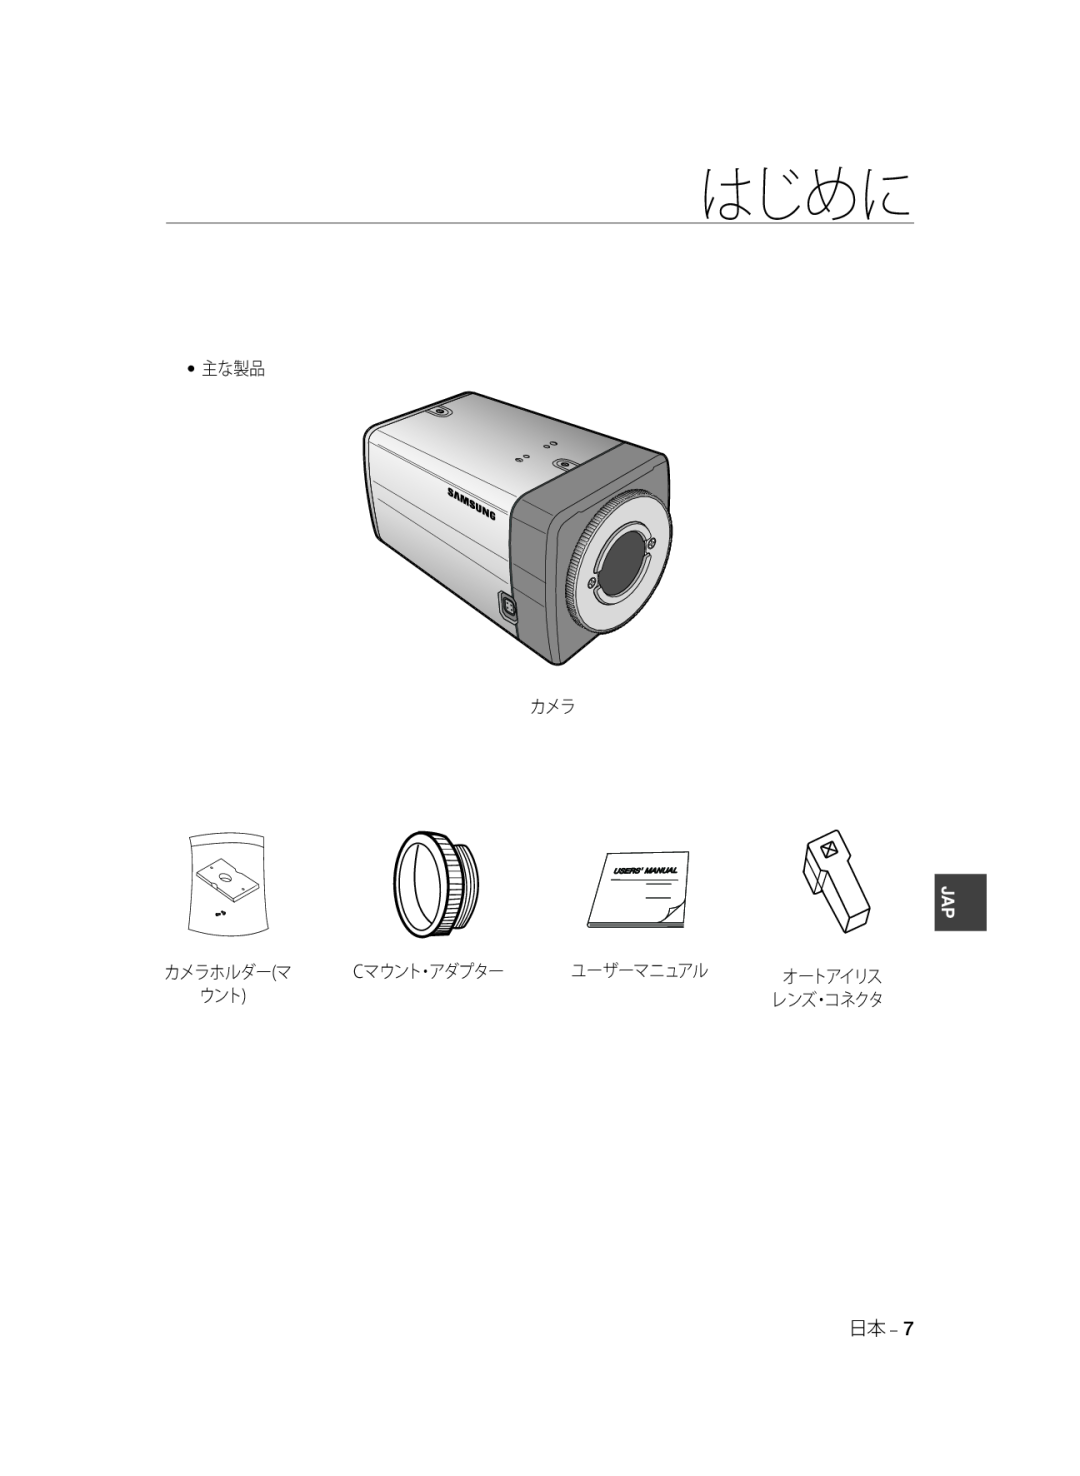 Samsung SCC-A2033P, SCC-A2333P manual 主な製品 カメラ, カメラホルダーマ, Cマウント・アダプター, ユーザーマニュアル, はじめに, オートアイリス 